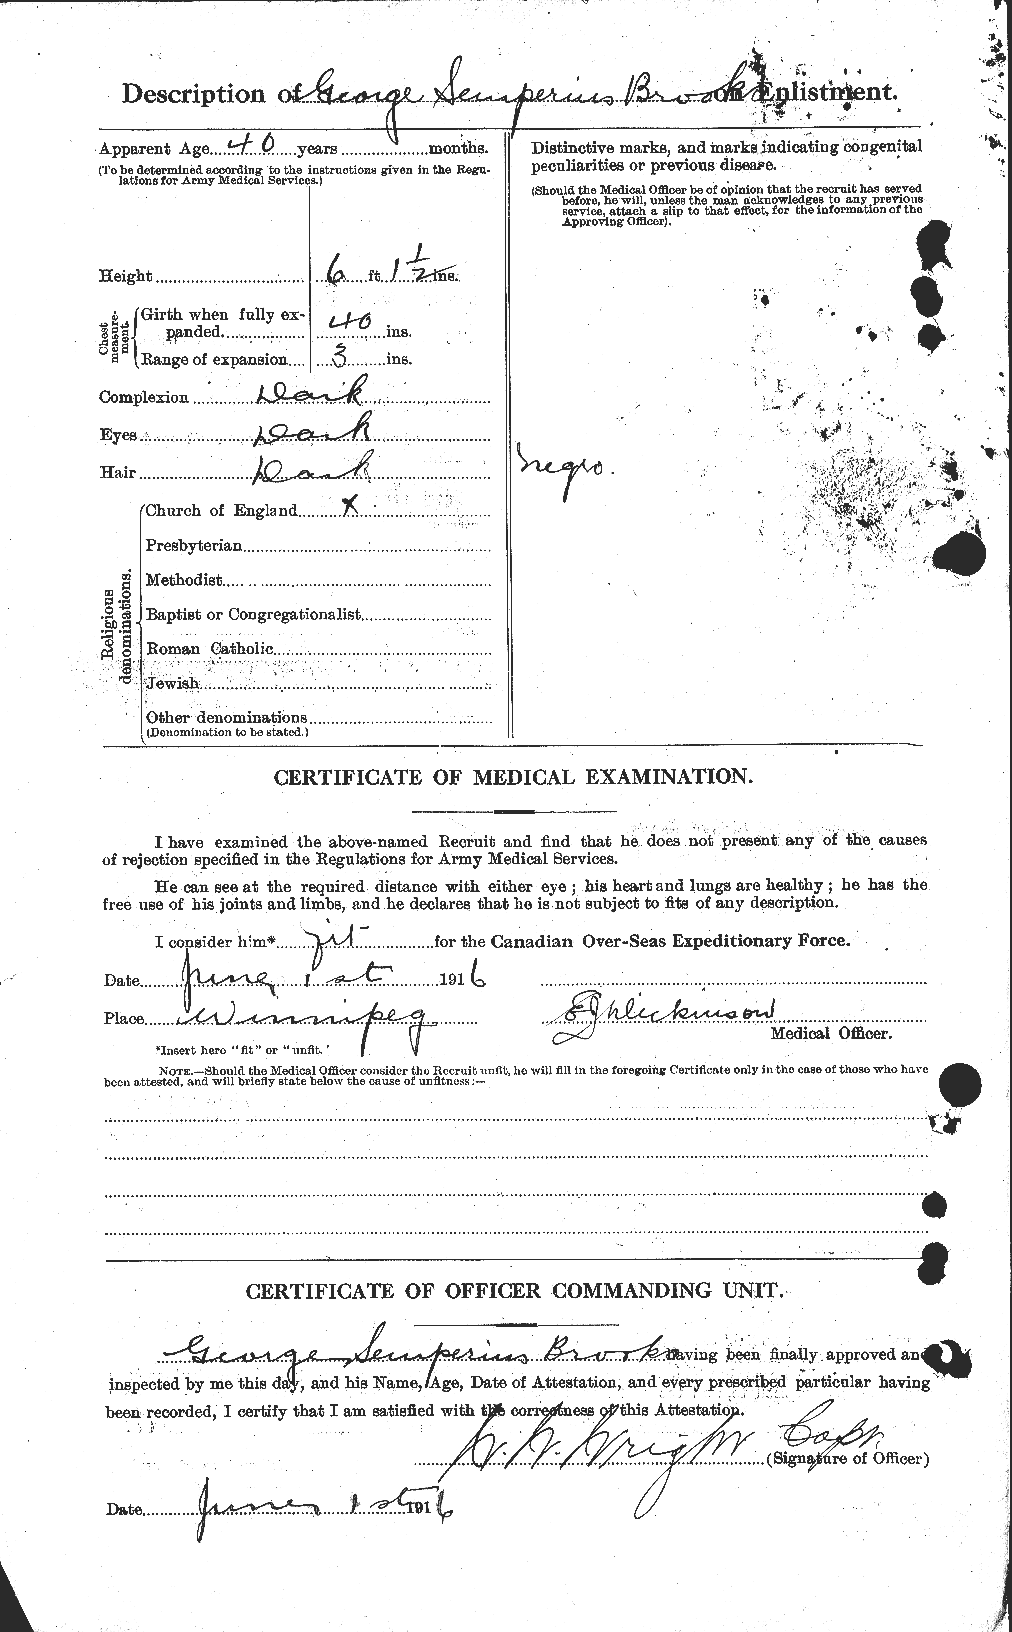 Dossiers du Personnel de la Première Guerre mondiale - CEC 261663b